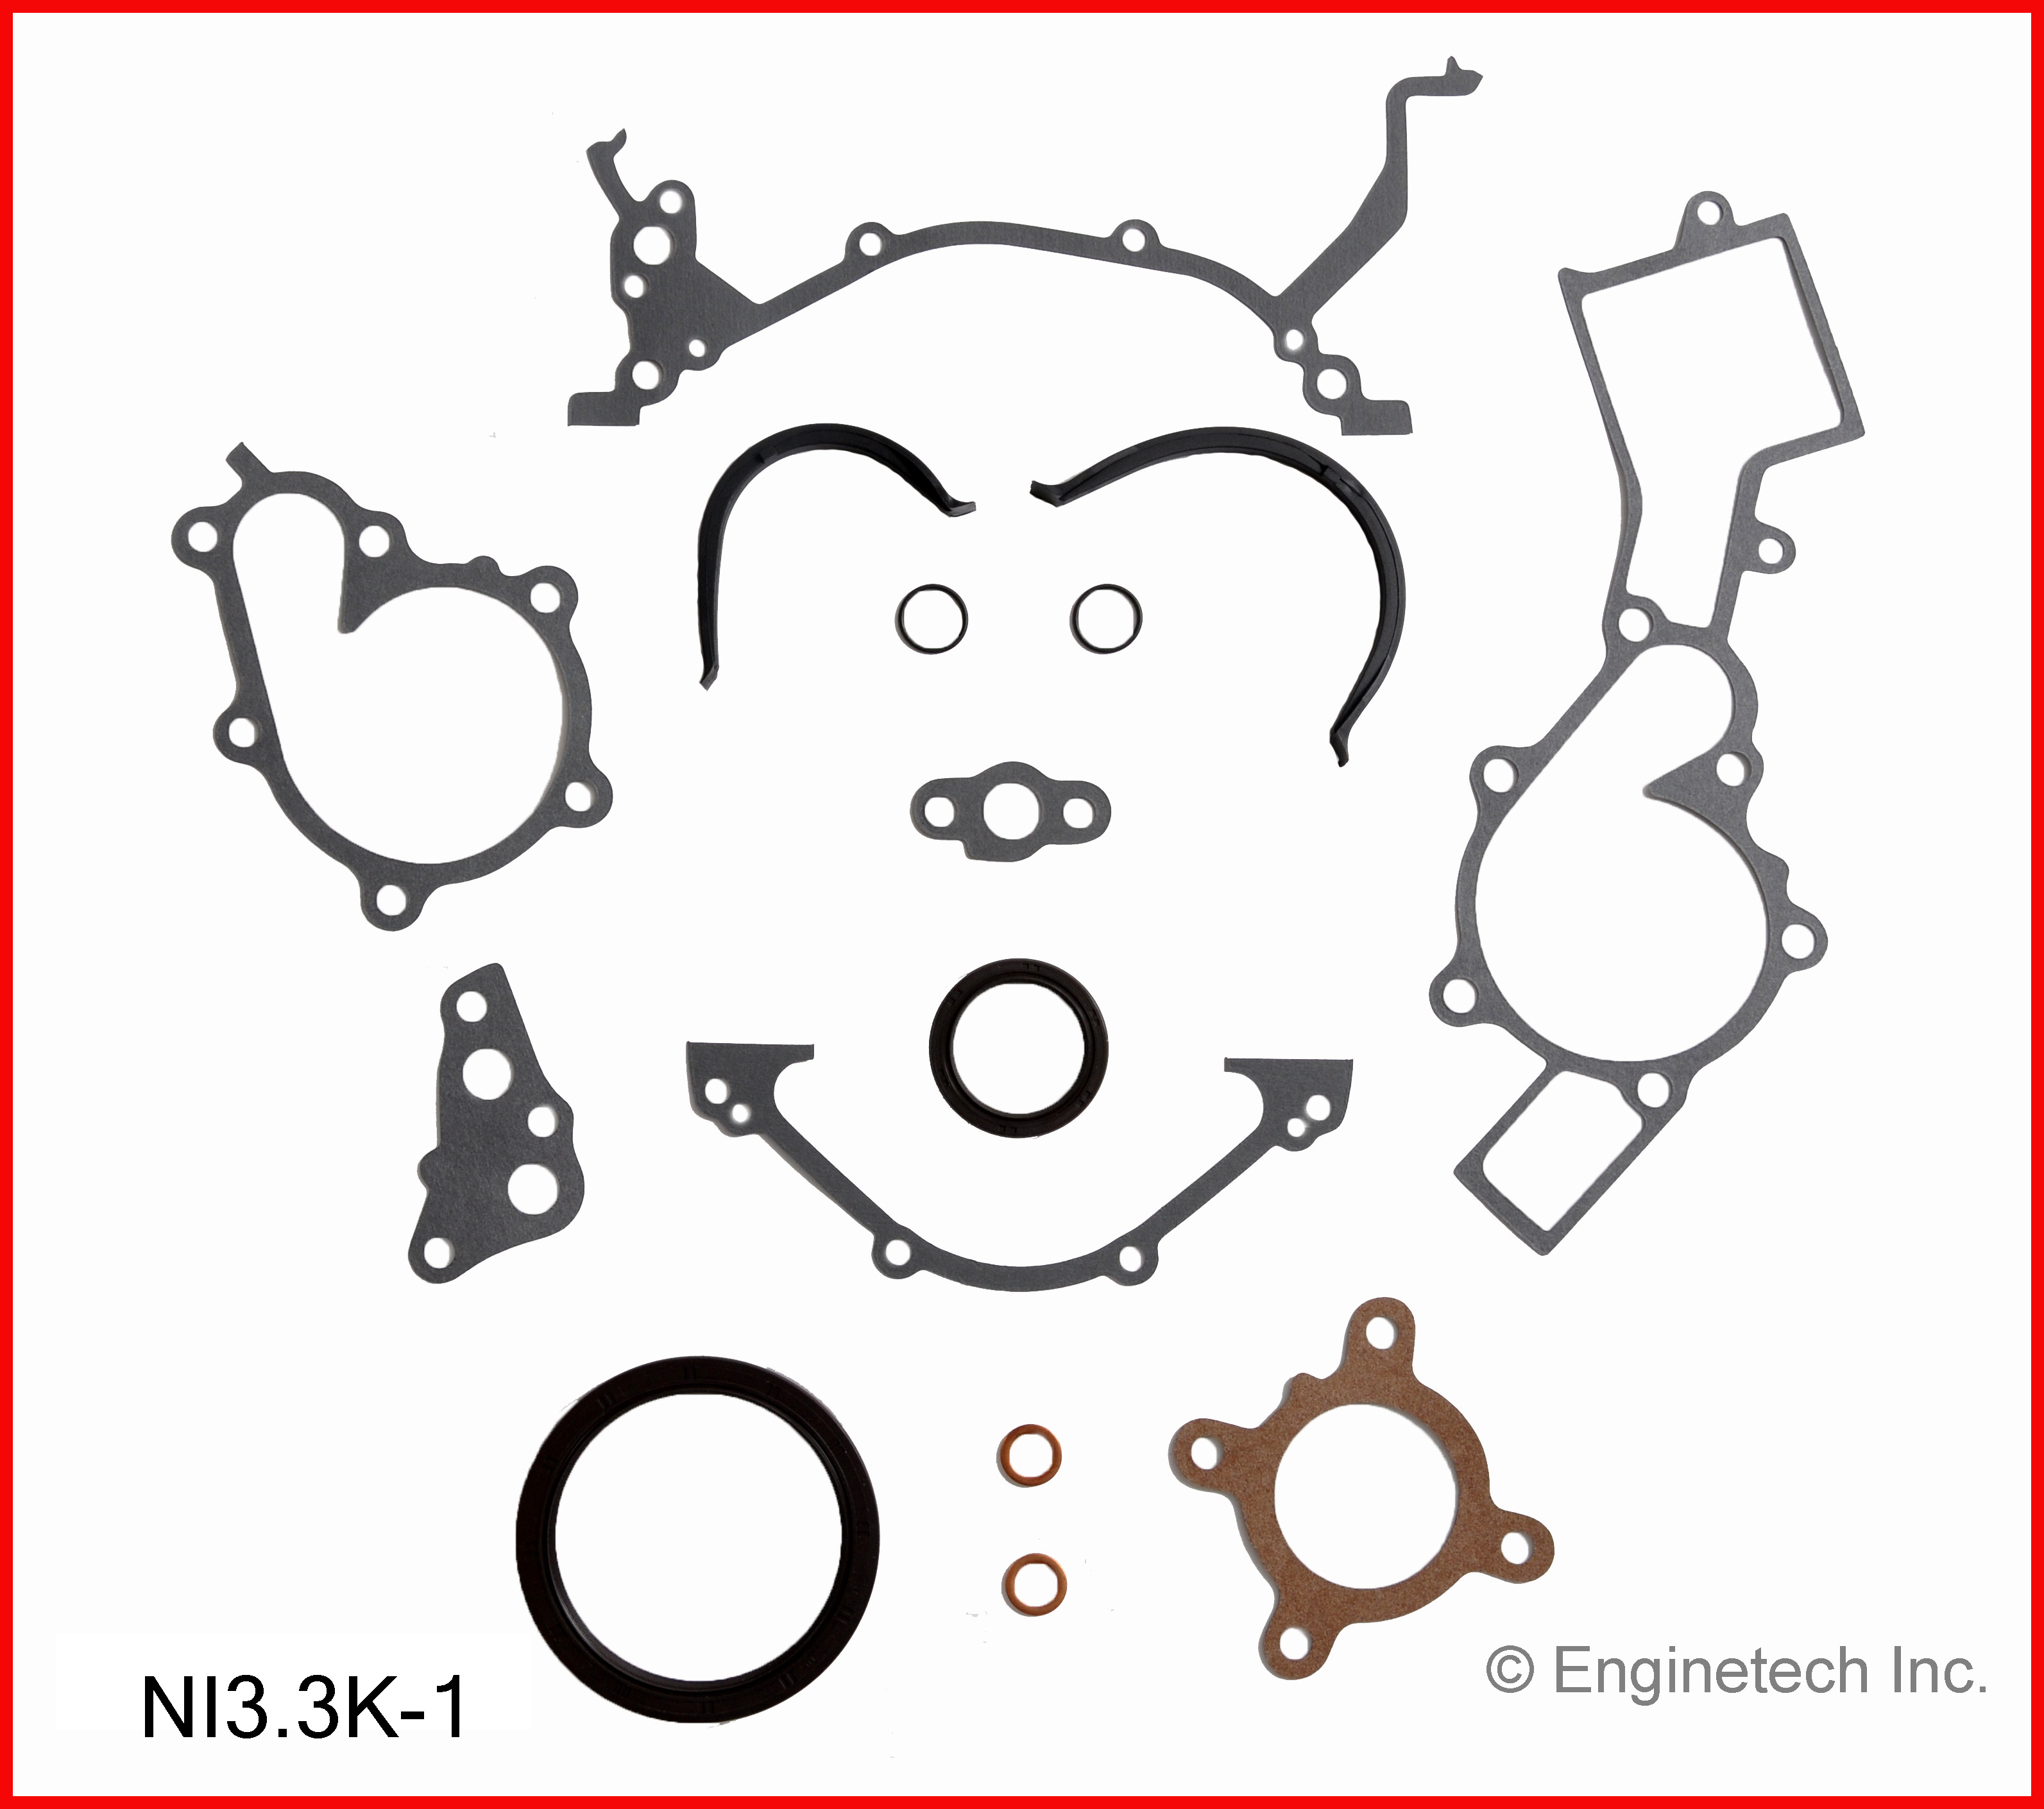 NI3.3K-1 Gasket Set - Full Enginetech